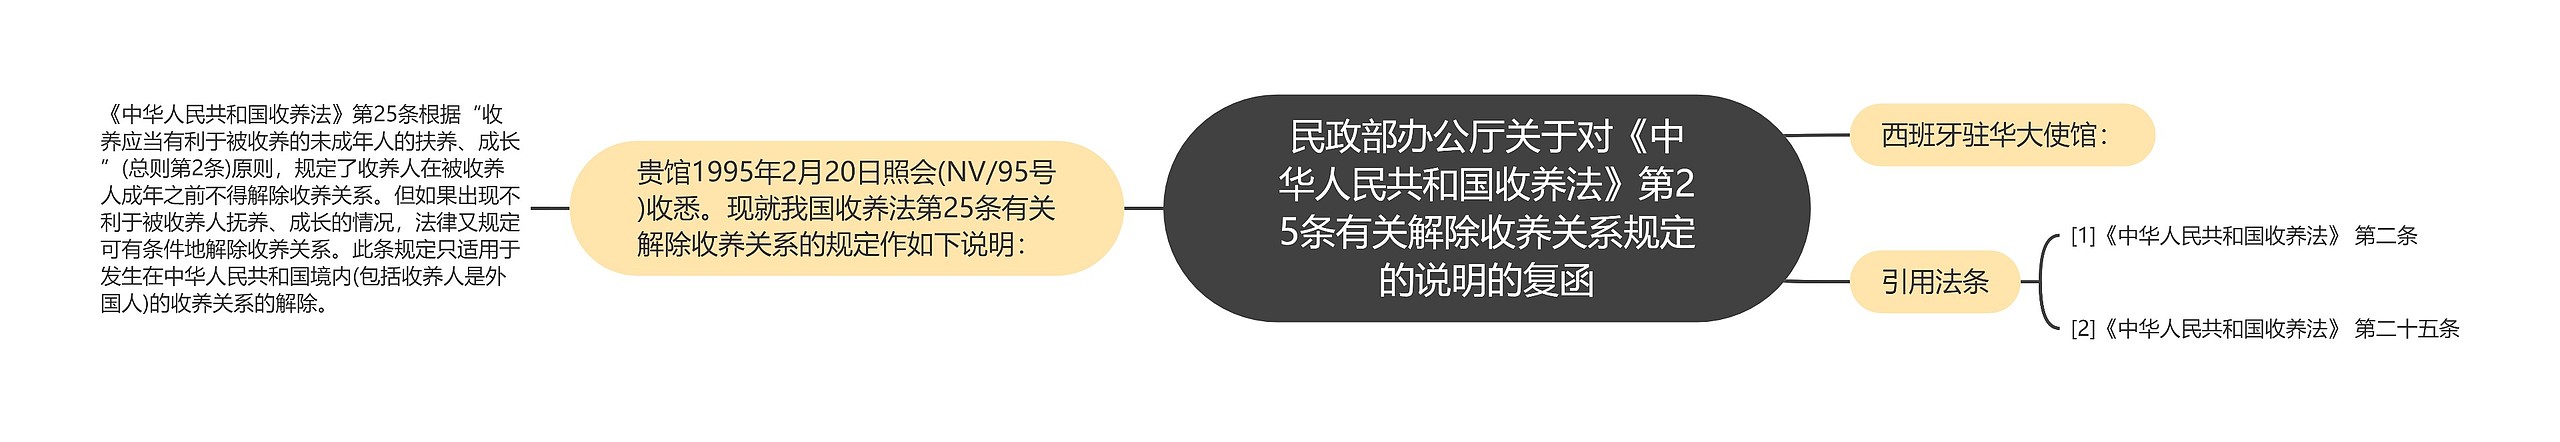 民政部办公厅关于对《中华人民共和国收养法》第25条有关解除收养关系规定的说明的复函思维导图